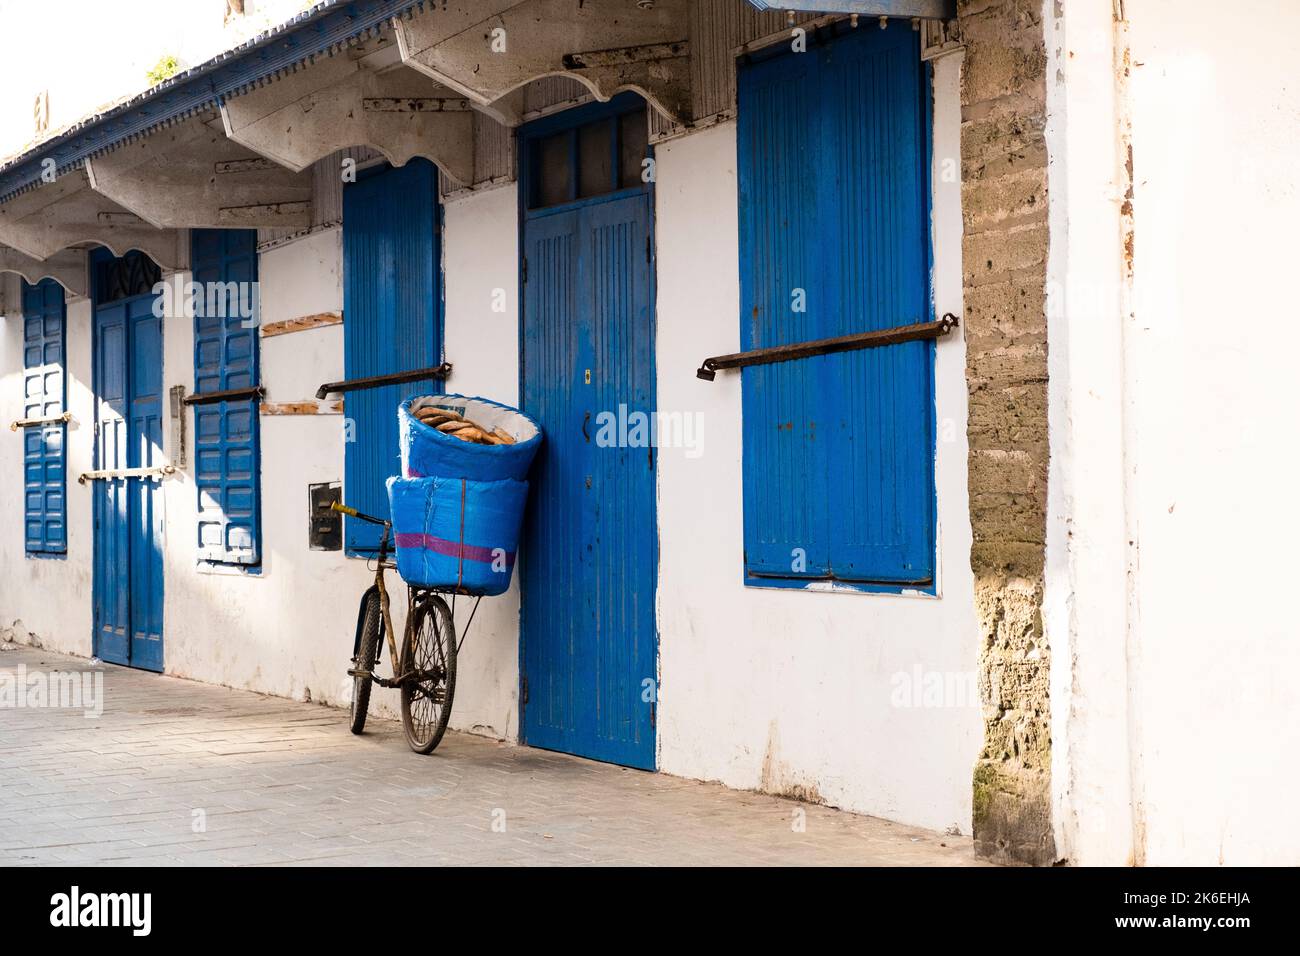 Vieille bicyclette penchée contre un bâtiment blanc et bleu indigo portant des paniers remplis de Kobz, le pain rond marocain typiquement mangé avec du tagine Banque D'Images